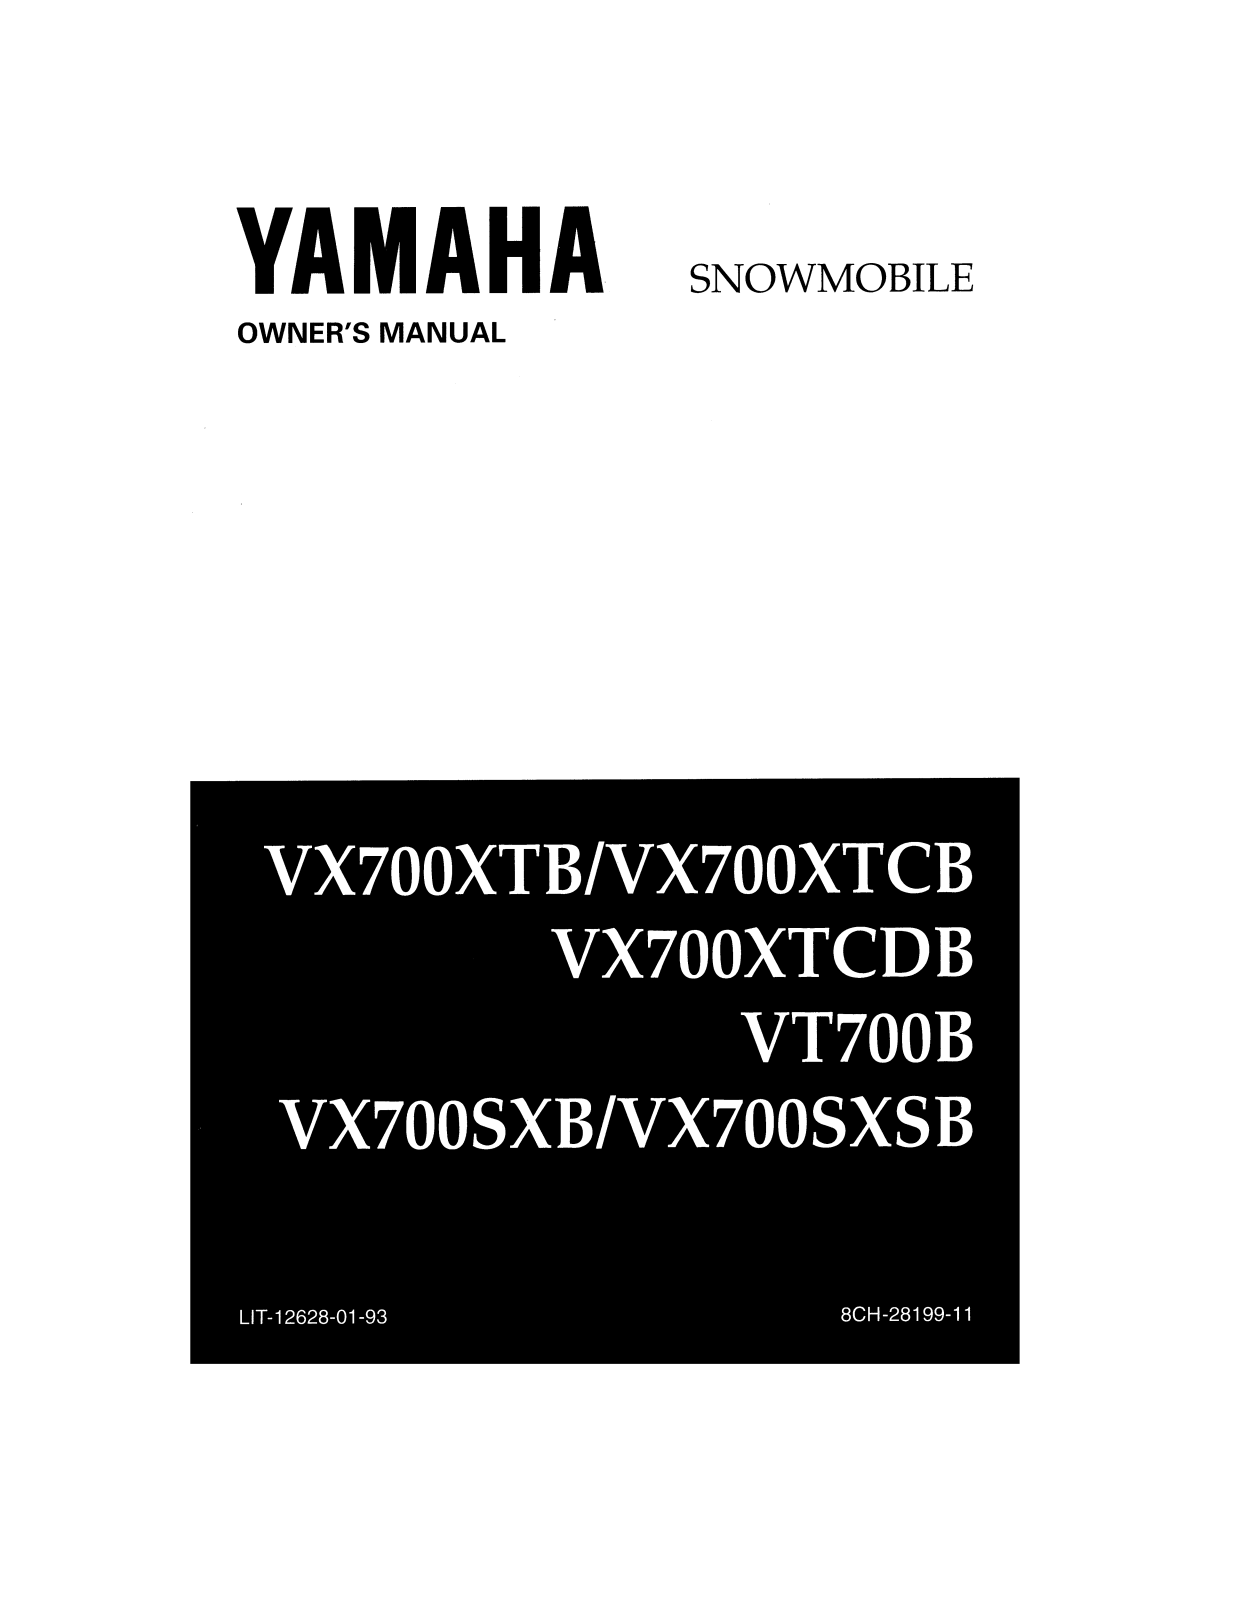 Yamaha VMAX 700 SX, VMAX 700 XTC DELUXE, VMAX 700 XT Manual